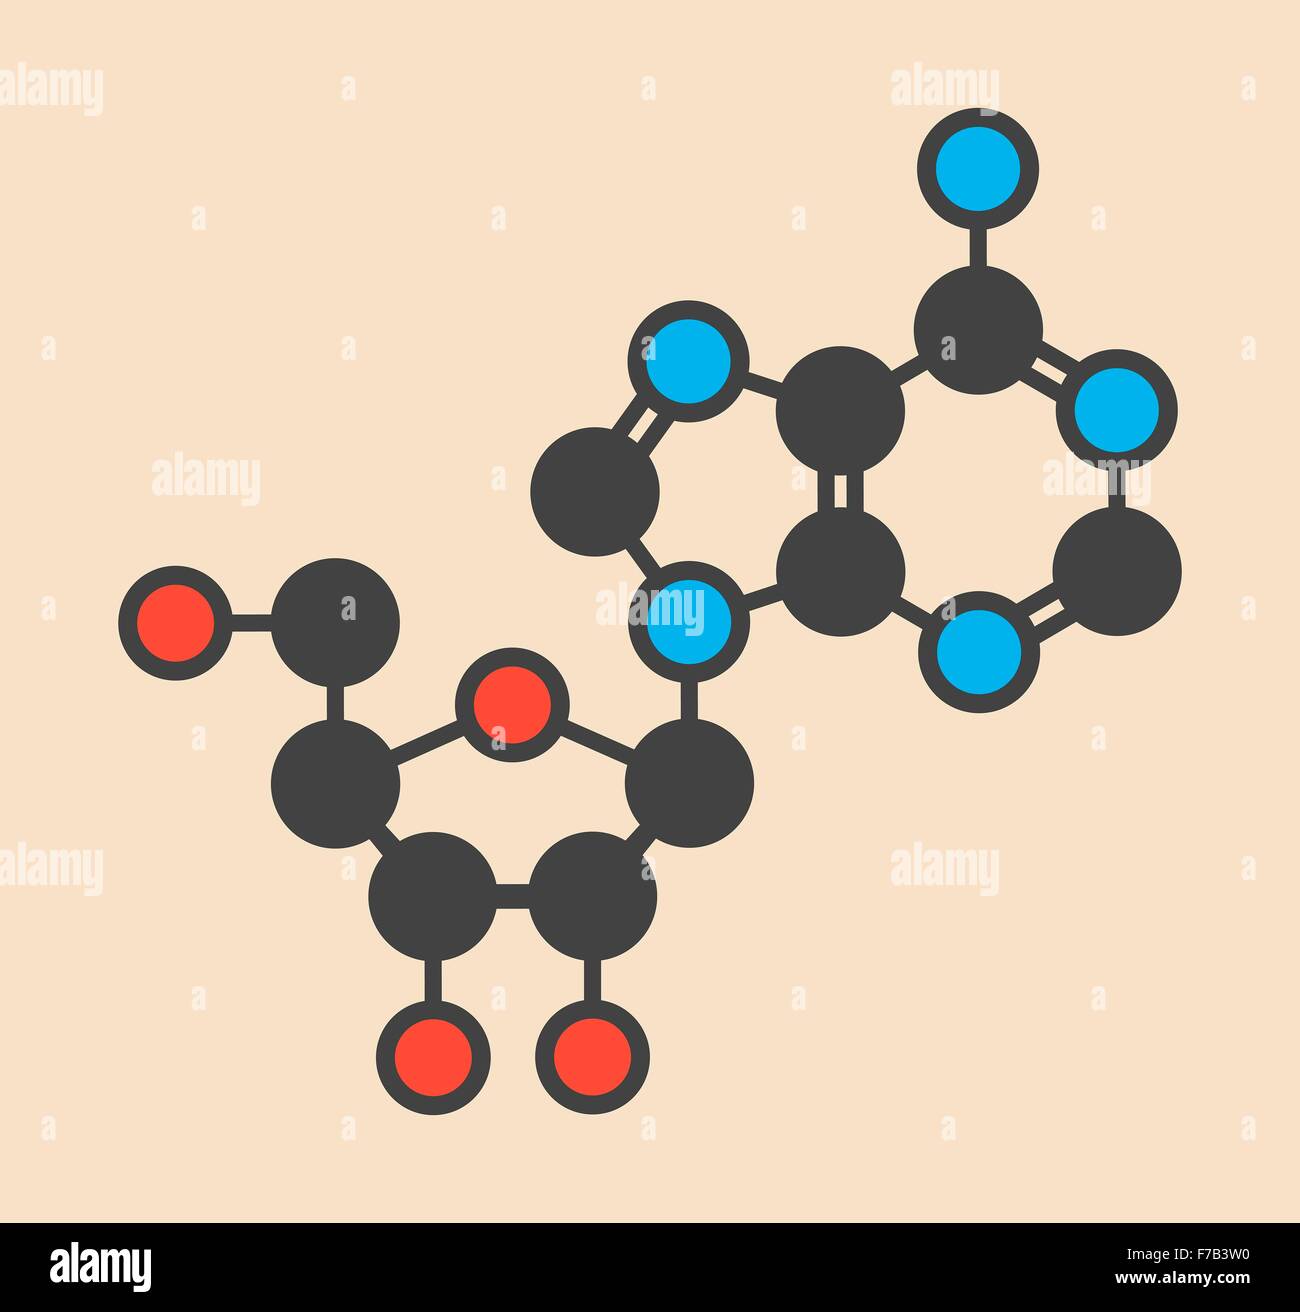 L'adénosine (Ado) de la purine nucléoside molécule. Composante importante de l'ATP, ADP, cAMP et de l'ARN. Aussi utilisé comme médicament. Squelettique stylisé Banque D'Images